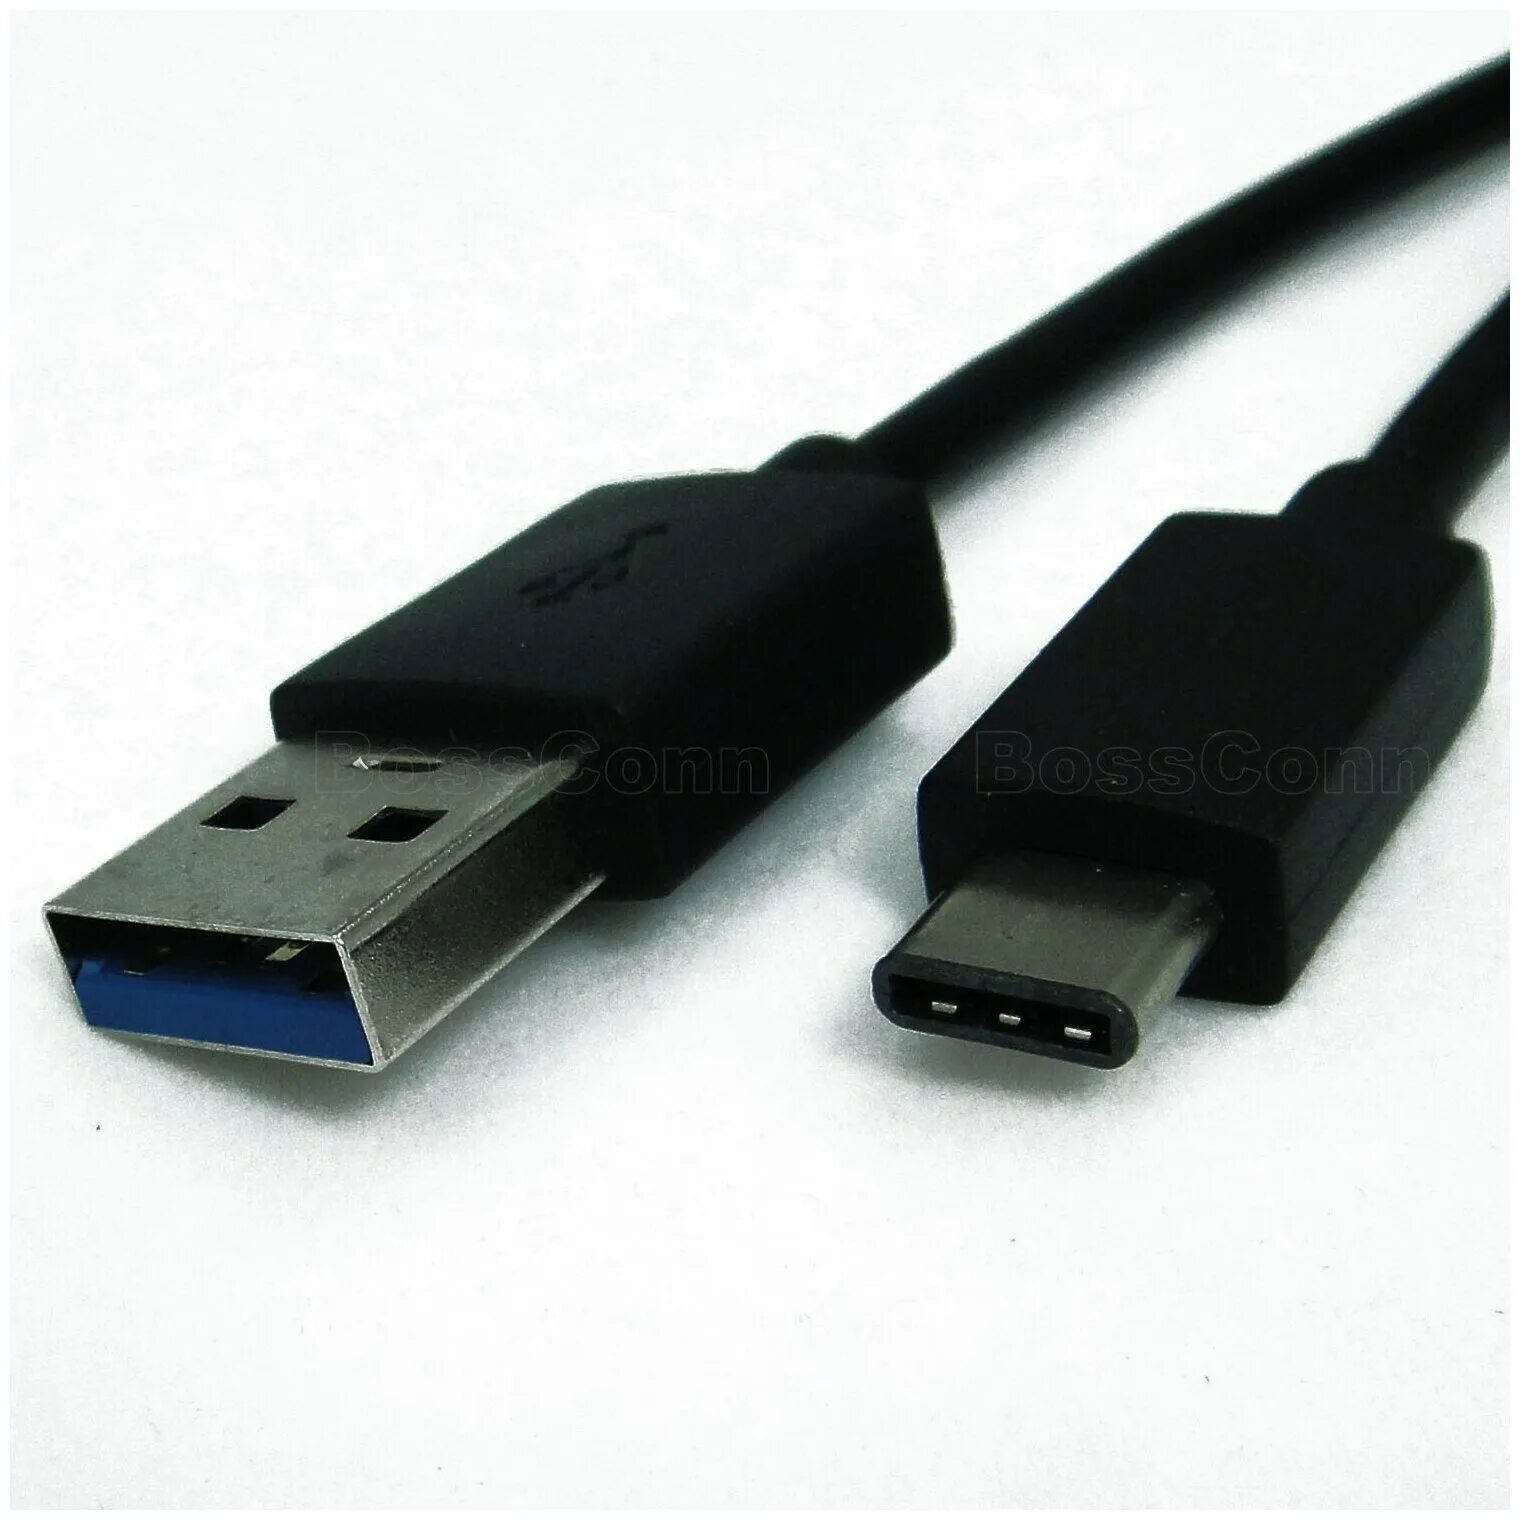 Usb c 01. USB 3.0 USB Type-c. Юсб 3.1 Type c. USB Type-c, USB 3.0 Type-a. Разъемов USB 3.0 (Type-c).